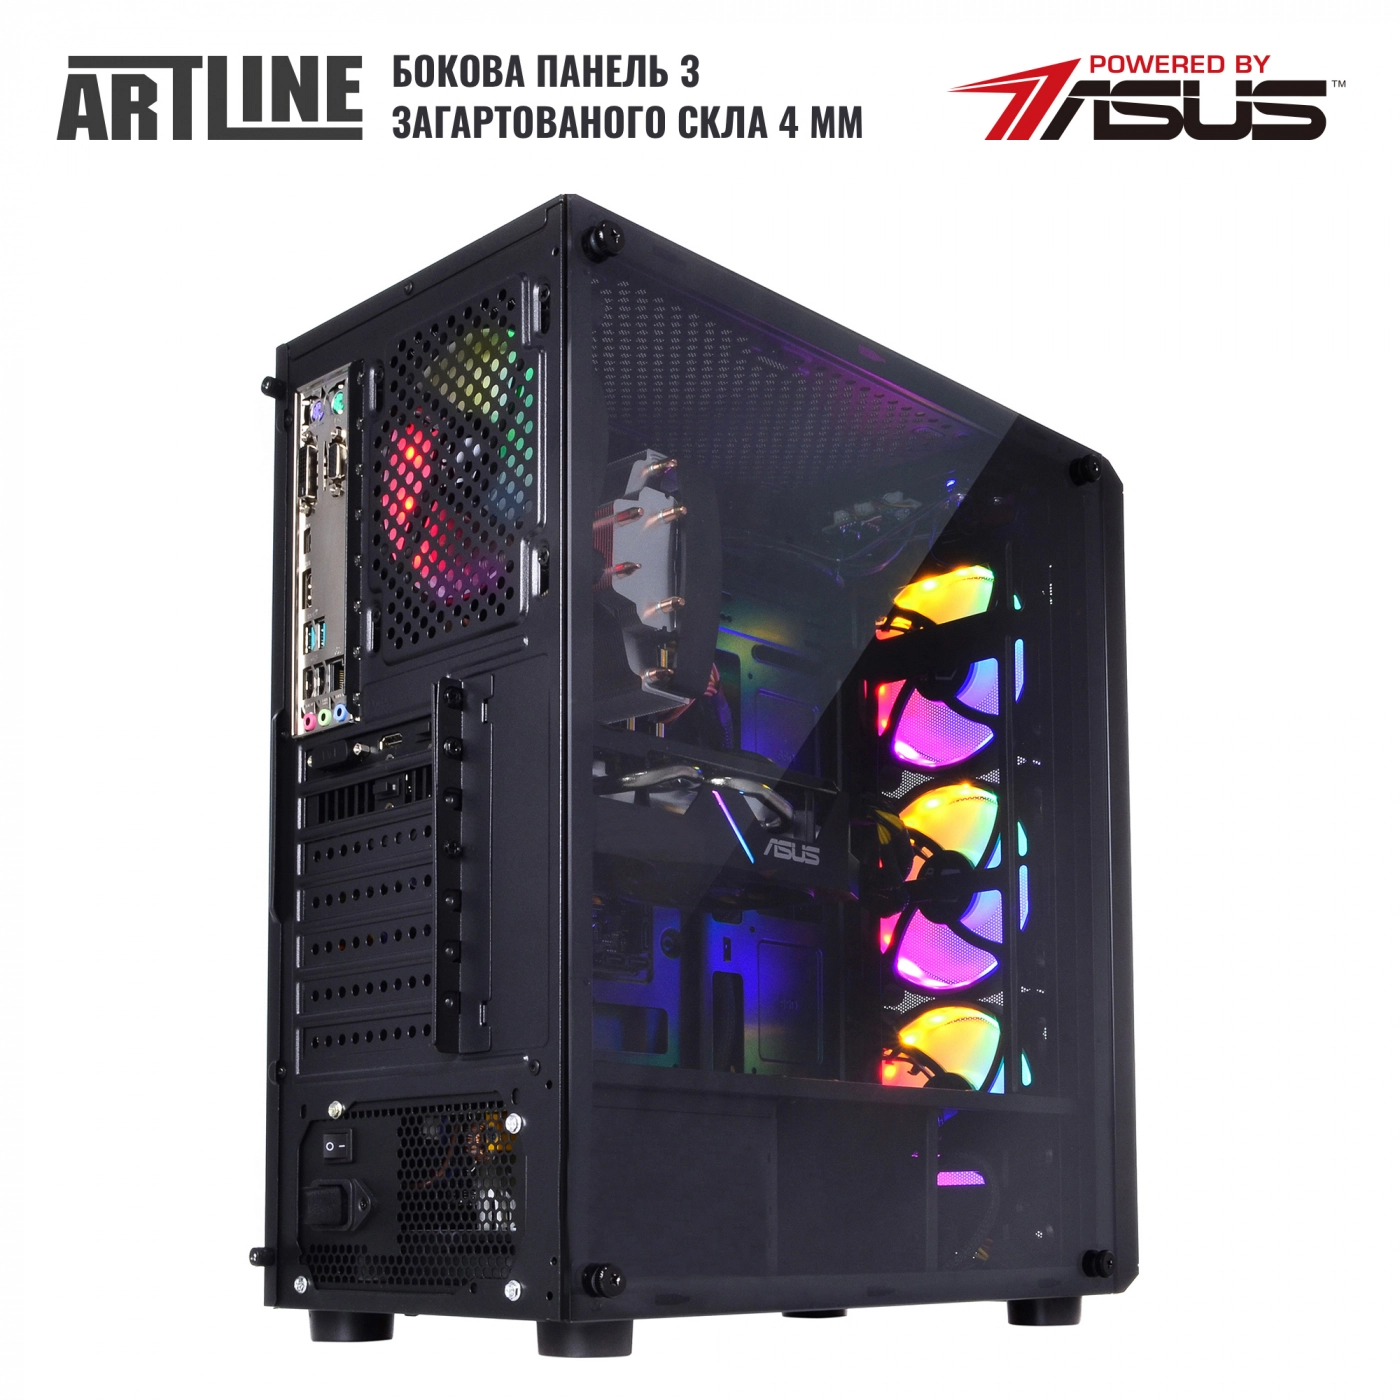 Купить Компьютер ARTLINE Gaming X48v37 - фото 8